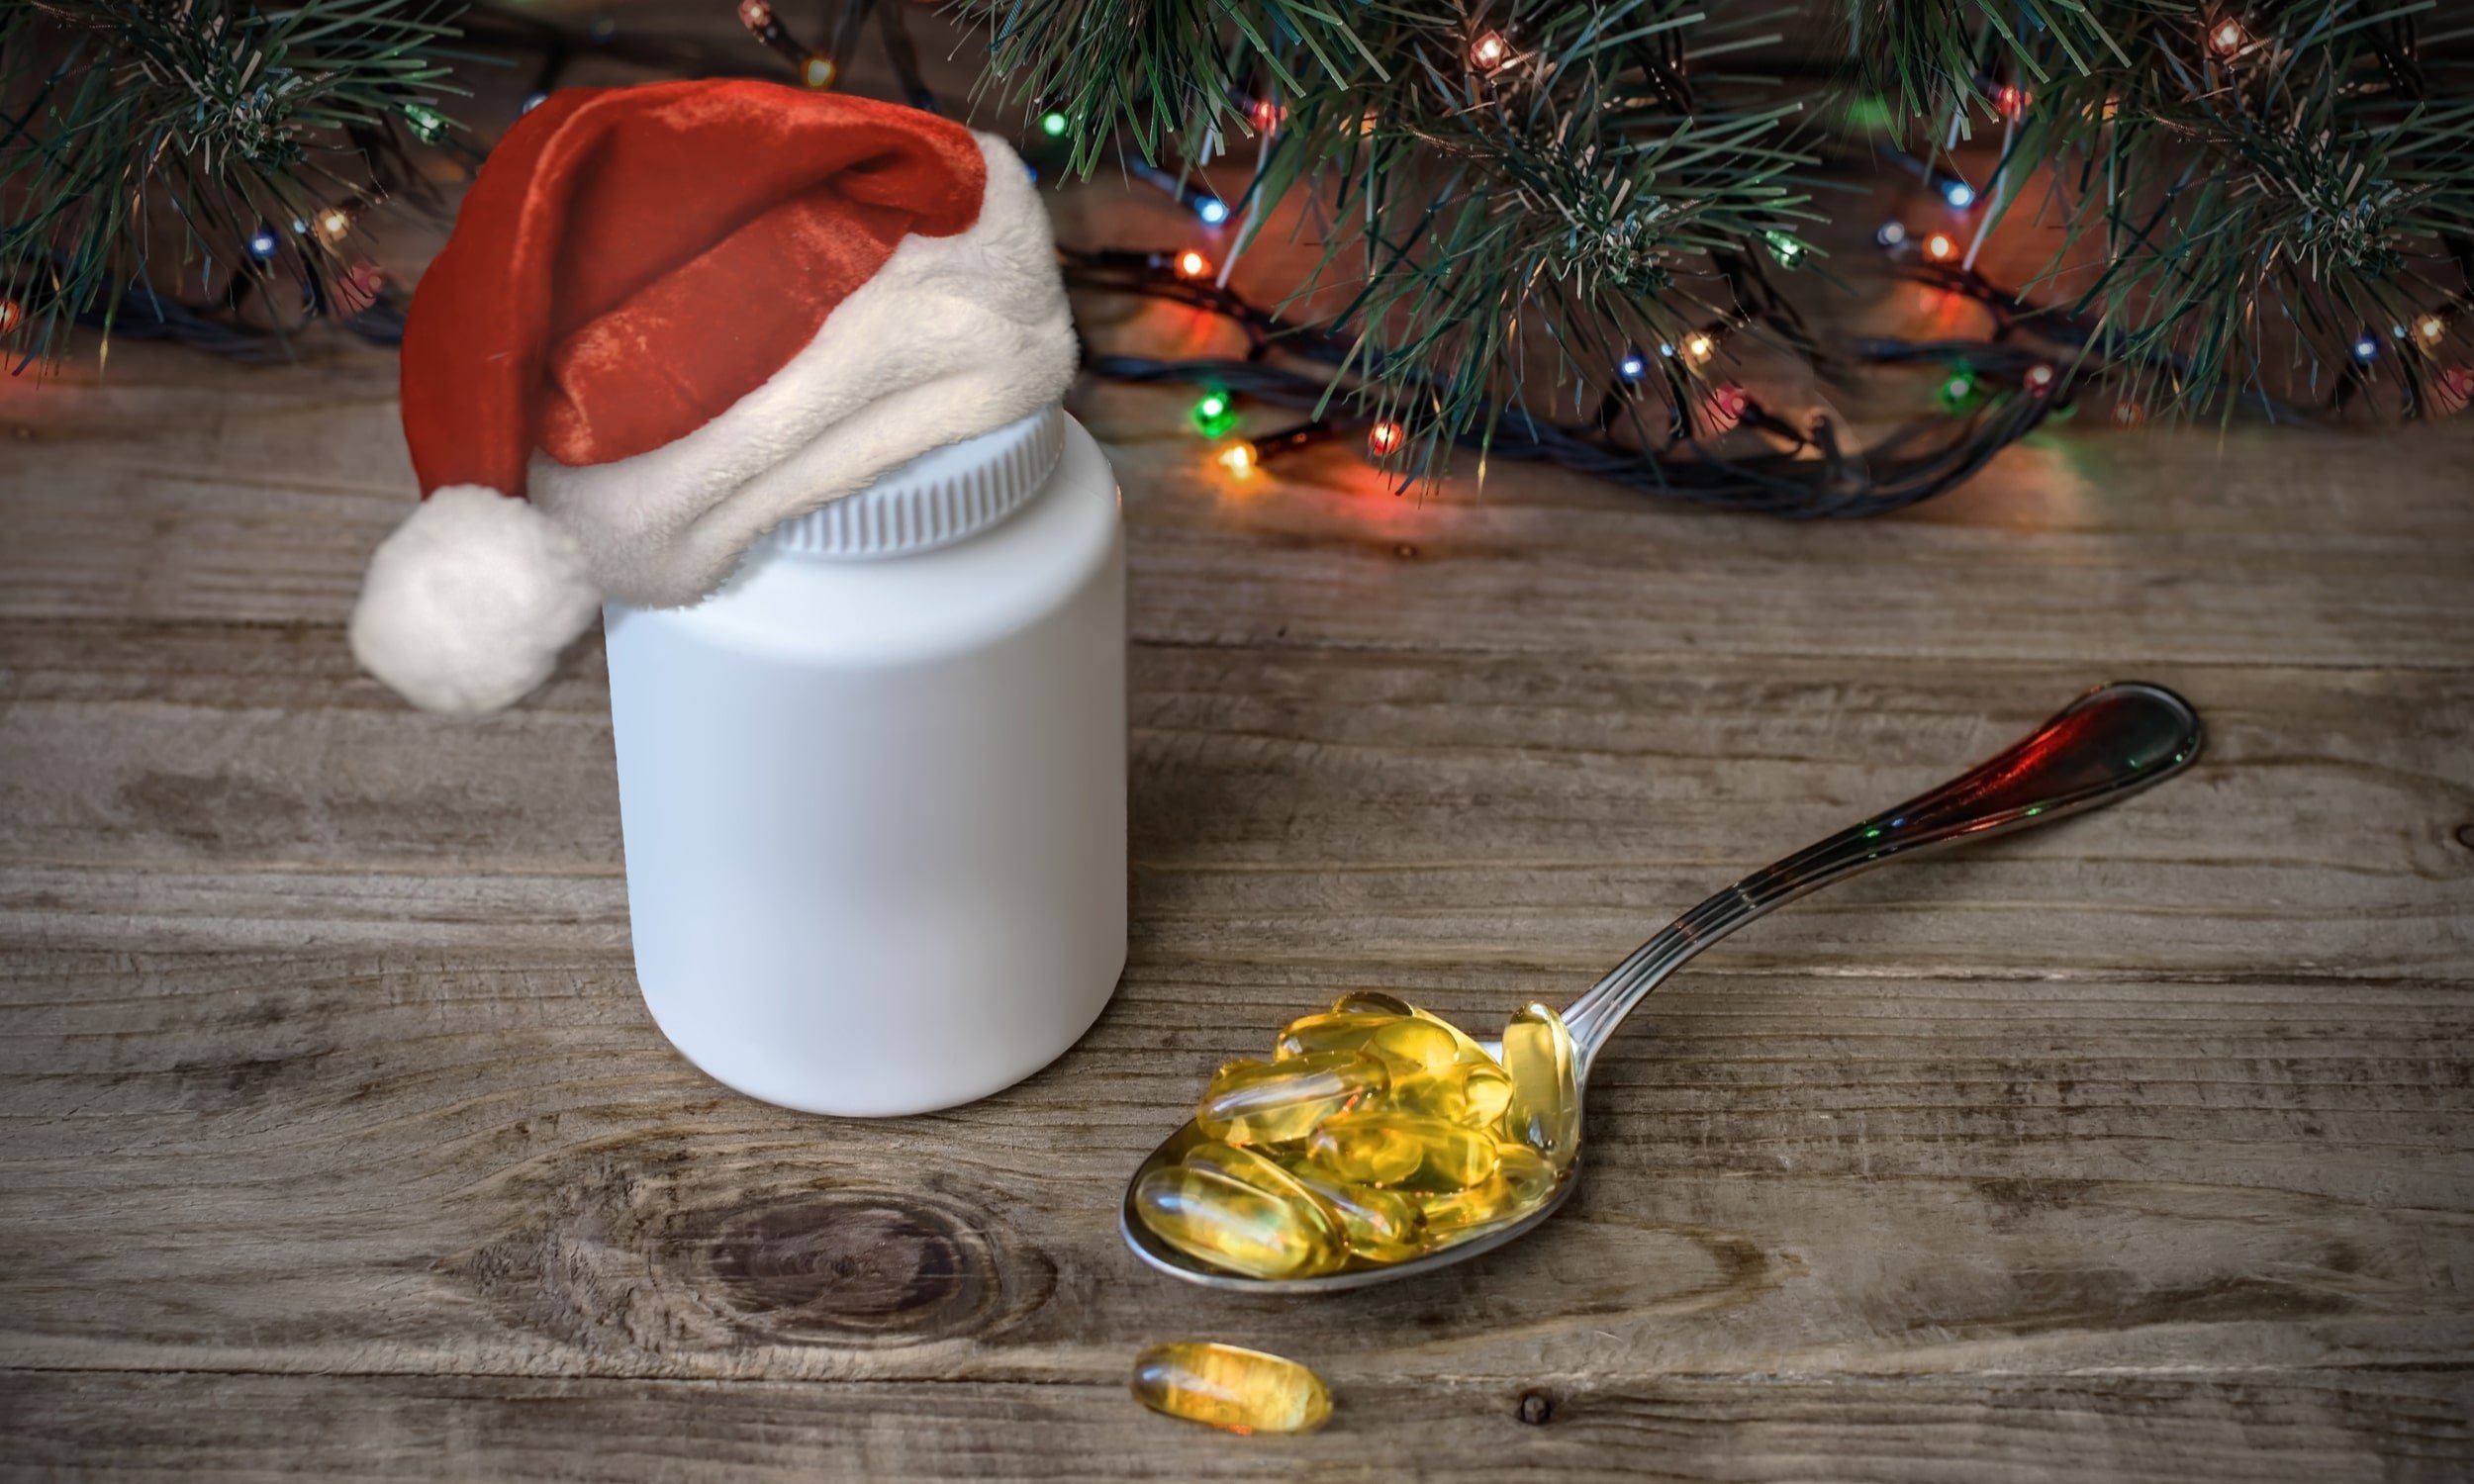 витамины и пищевые добавки в качестве подарка на рождество